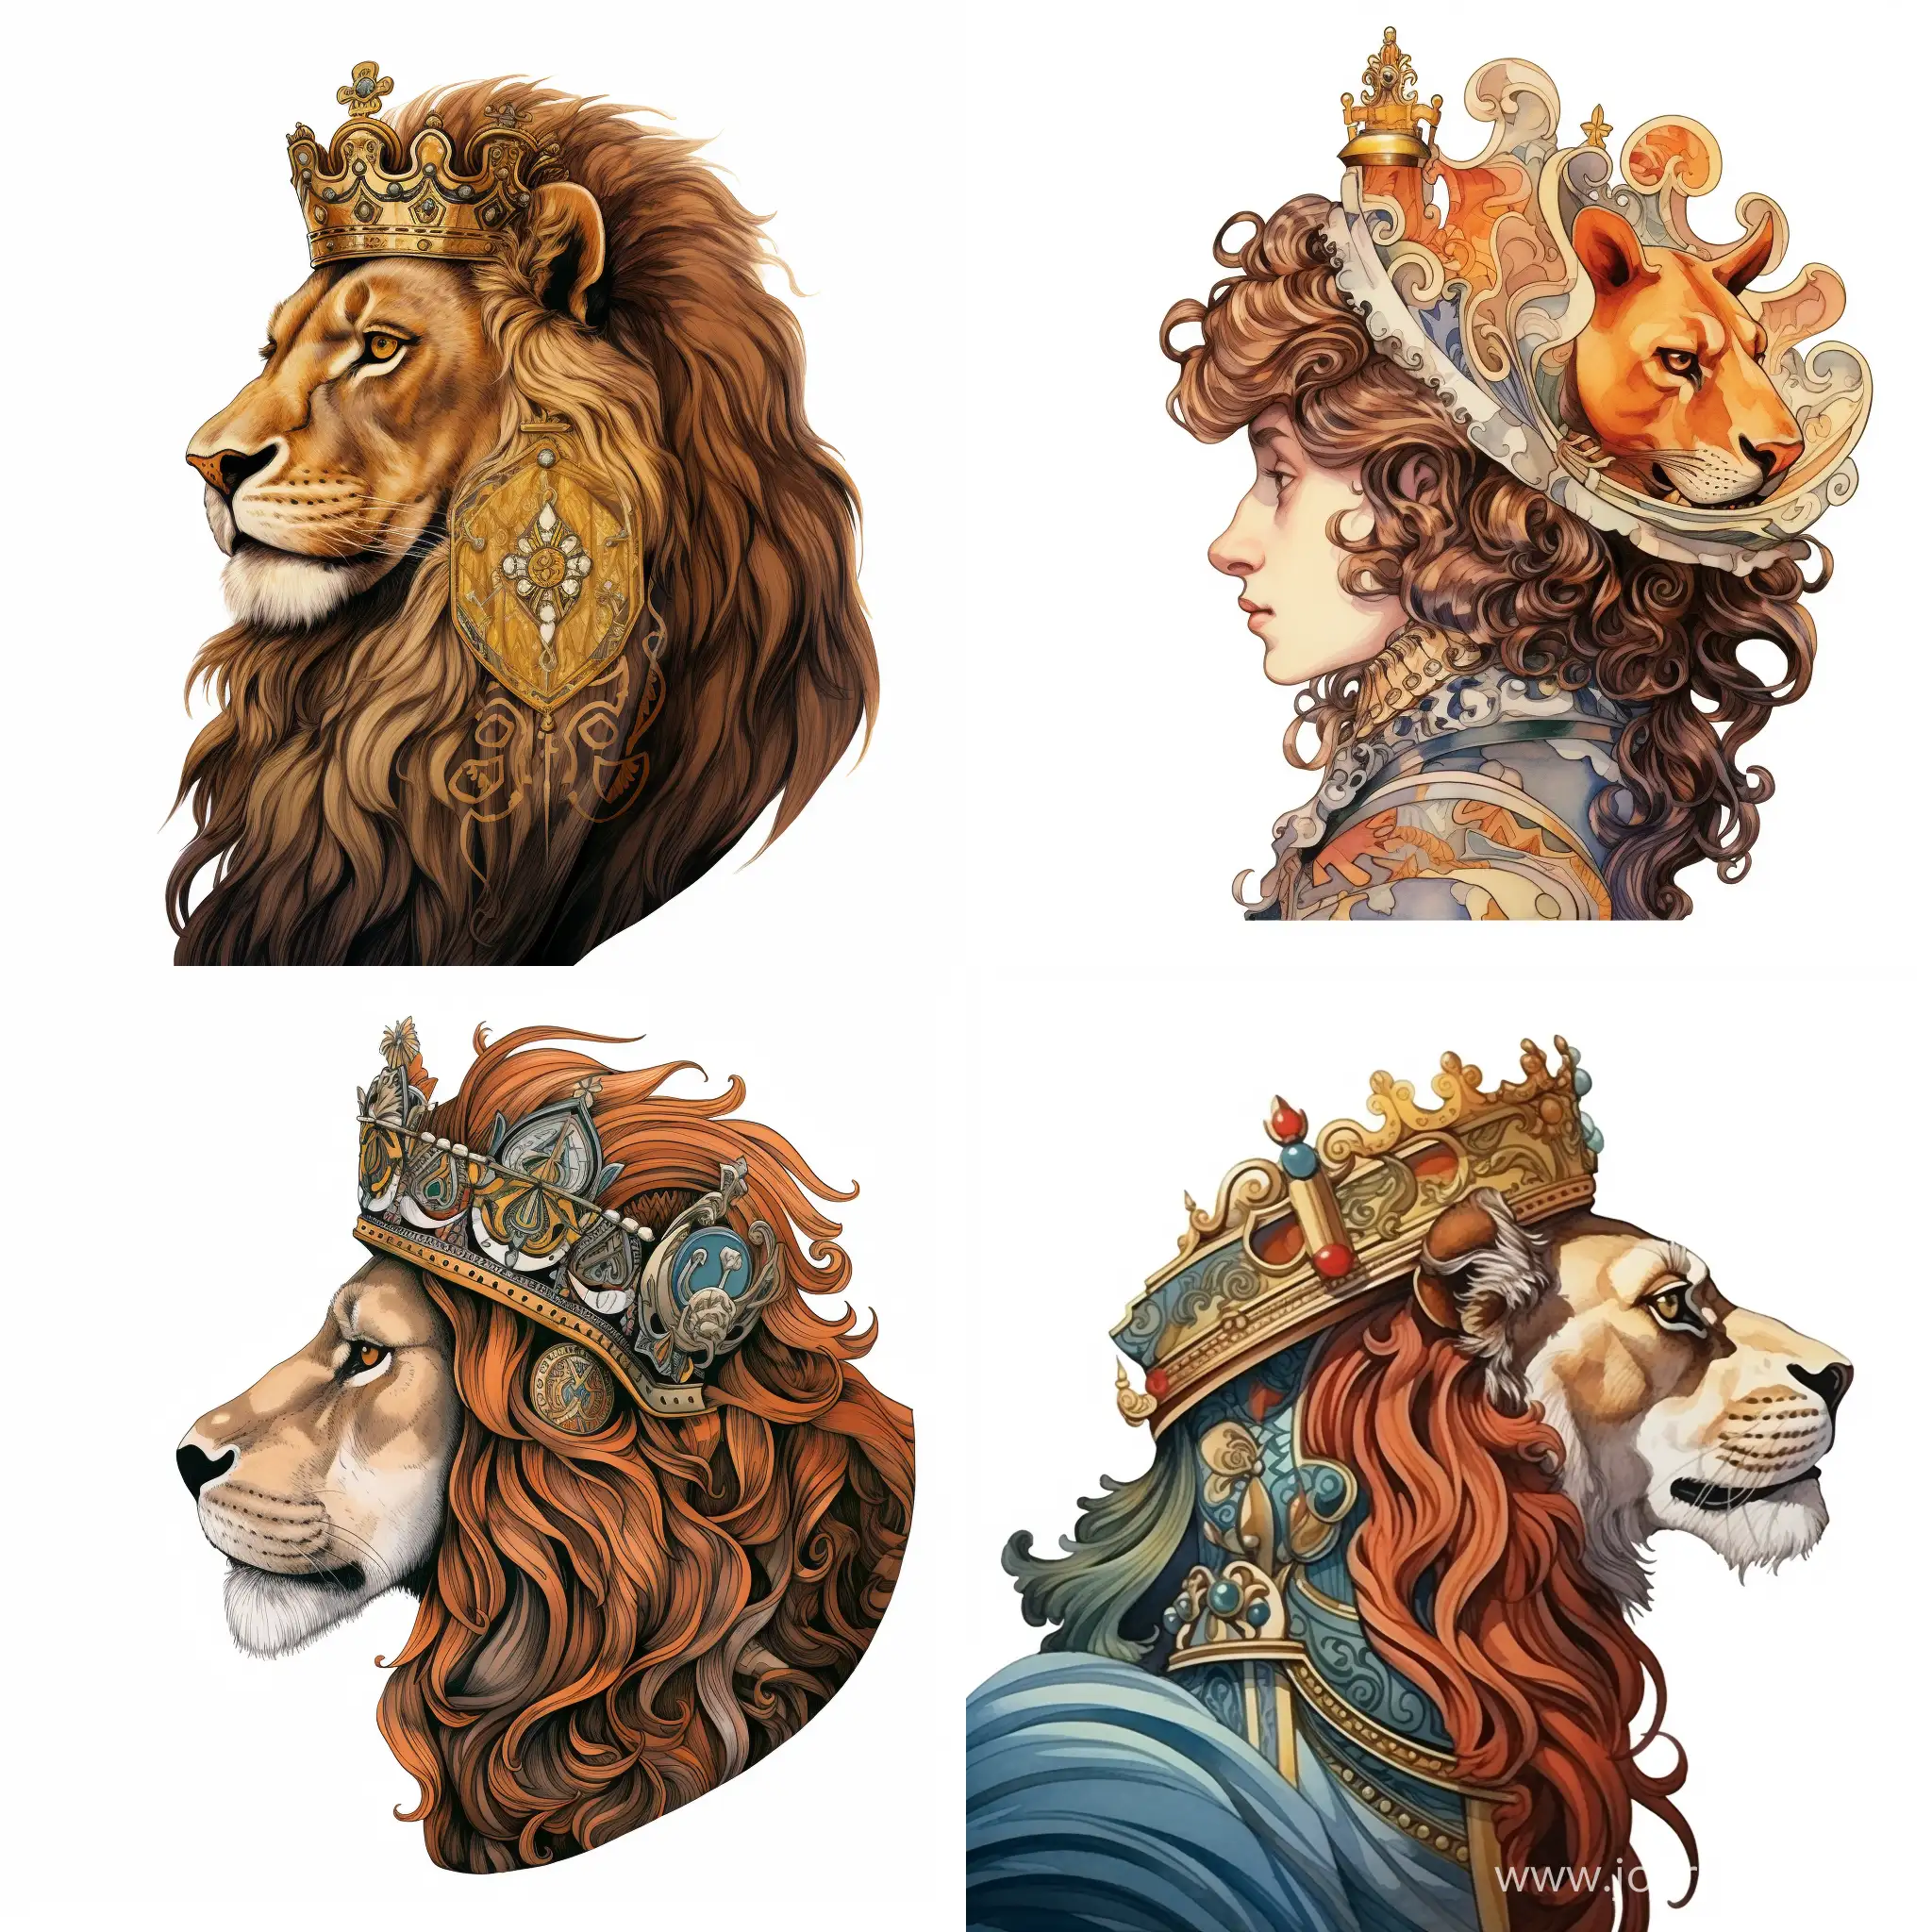 Regal-Lion-Portrait-in-James-Christensen-Cartoon-Style